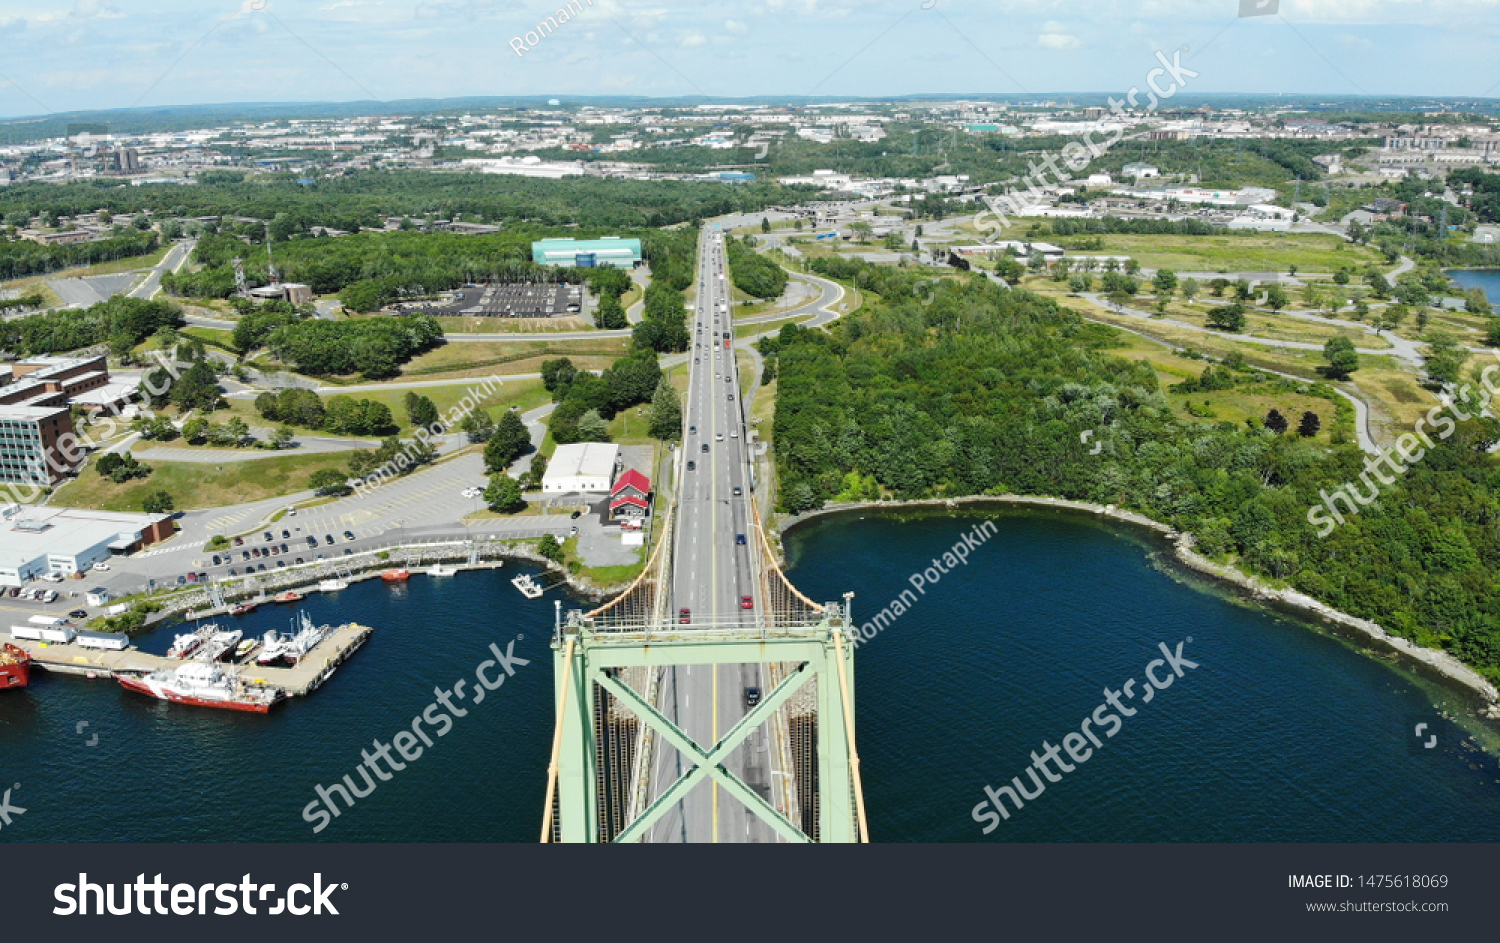 View of the bridge in Dartmouth, Nova Scotia